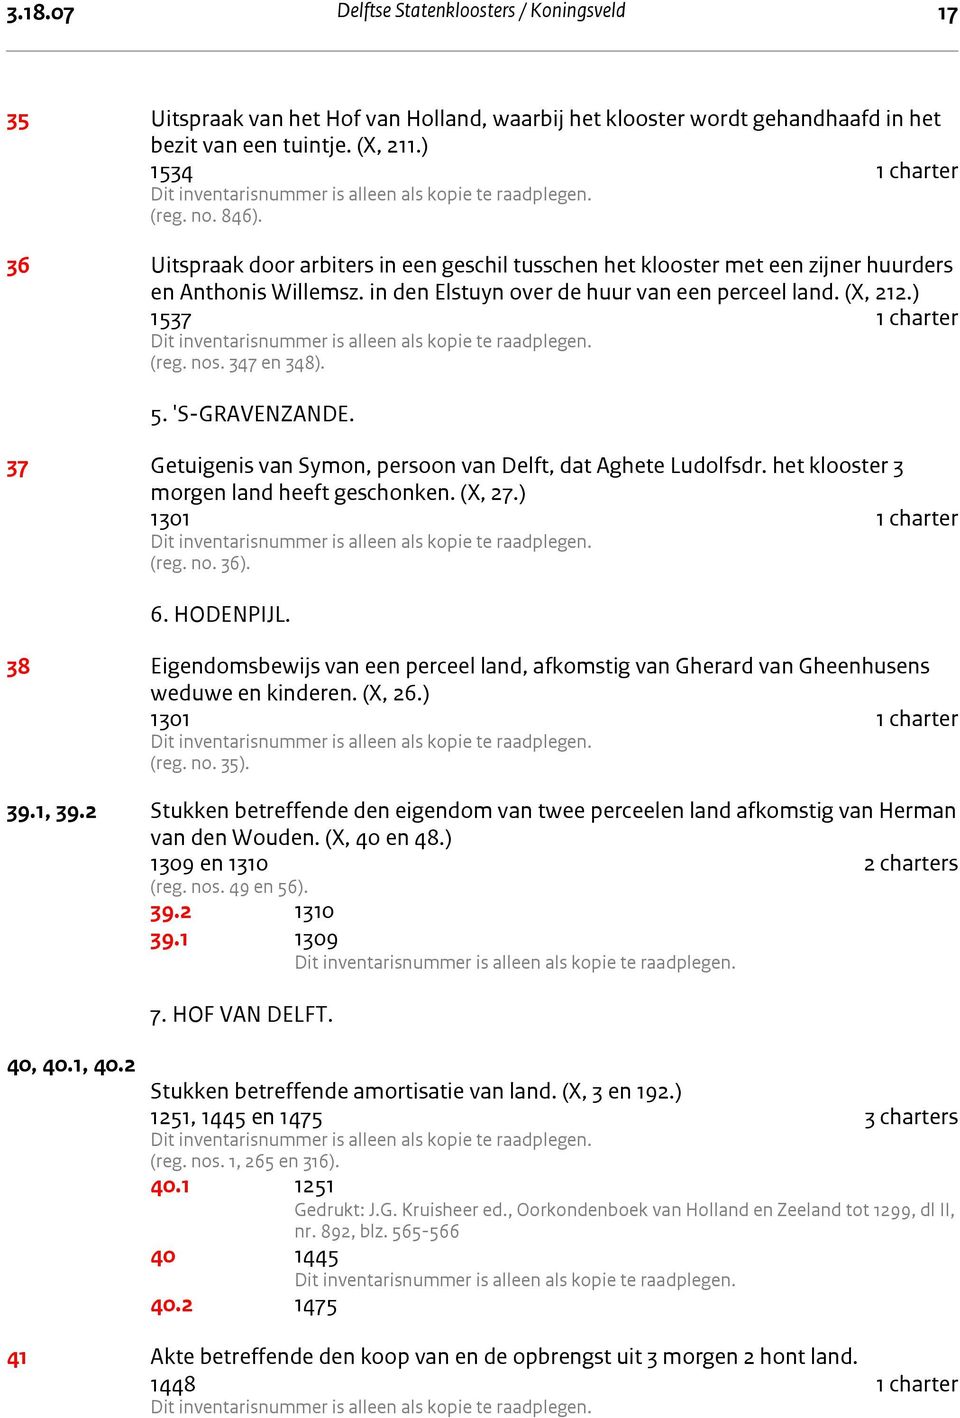 347 en 348). 5. 's-gravenzande. 5. 'S-GRAVENZANDE. 37 Getuigenis van Symon, persoon van Delft, dat Aghete Ludolfsdr. het klooster 3 morgen land heeft geschonken. (X, 27.) 1301 1 charter (reg. no. 36).